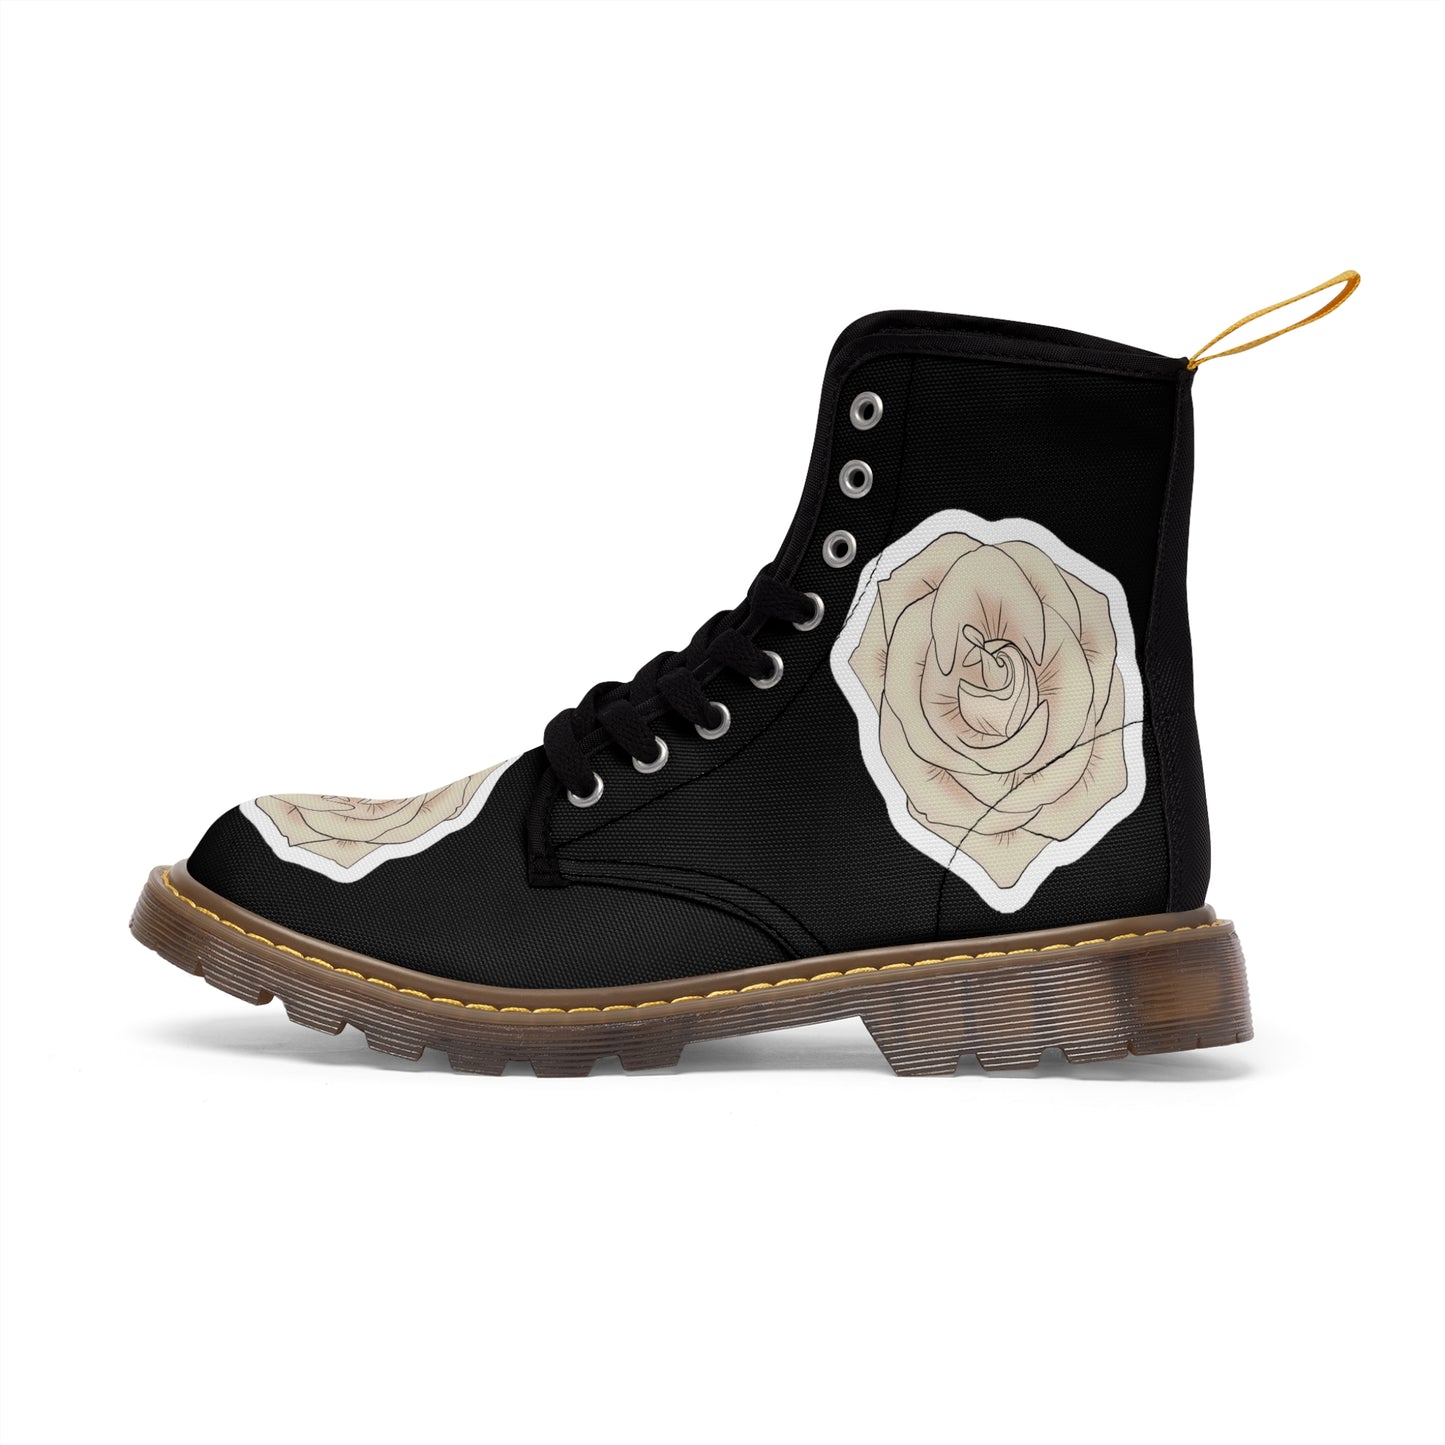 Men's Canvas Boots  "Champaign Rose"